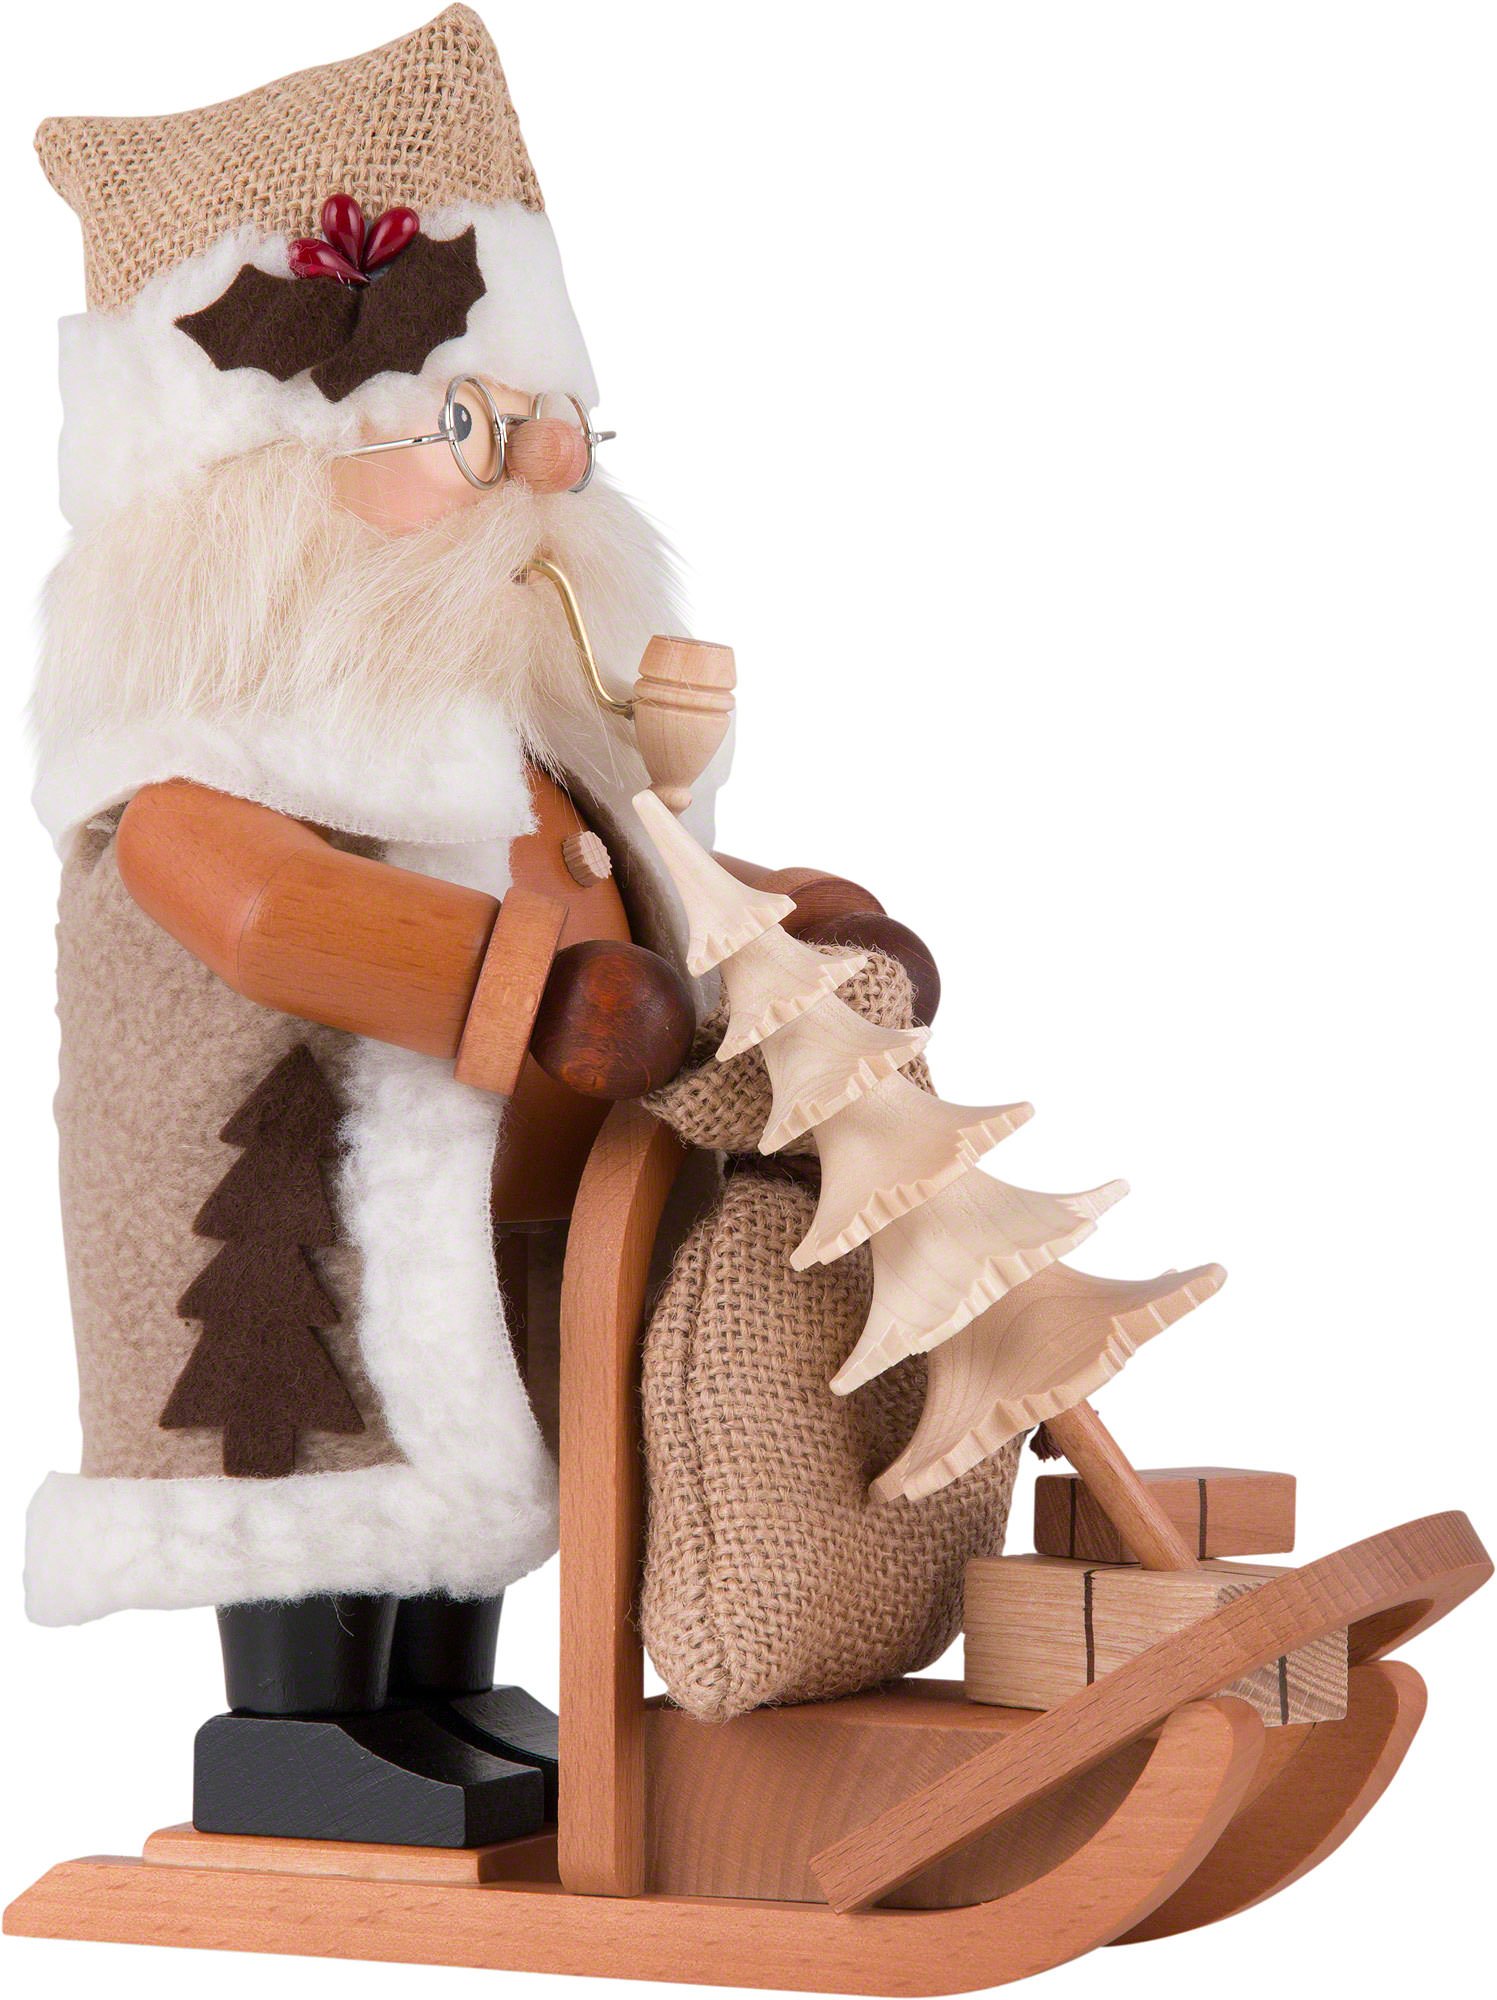 Räuchermännchen Weihnachtsmann mit Schlitten (28 von cm) Ulbricht Christian